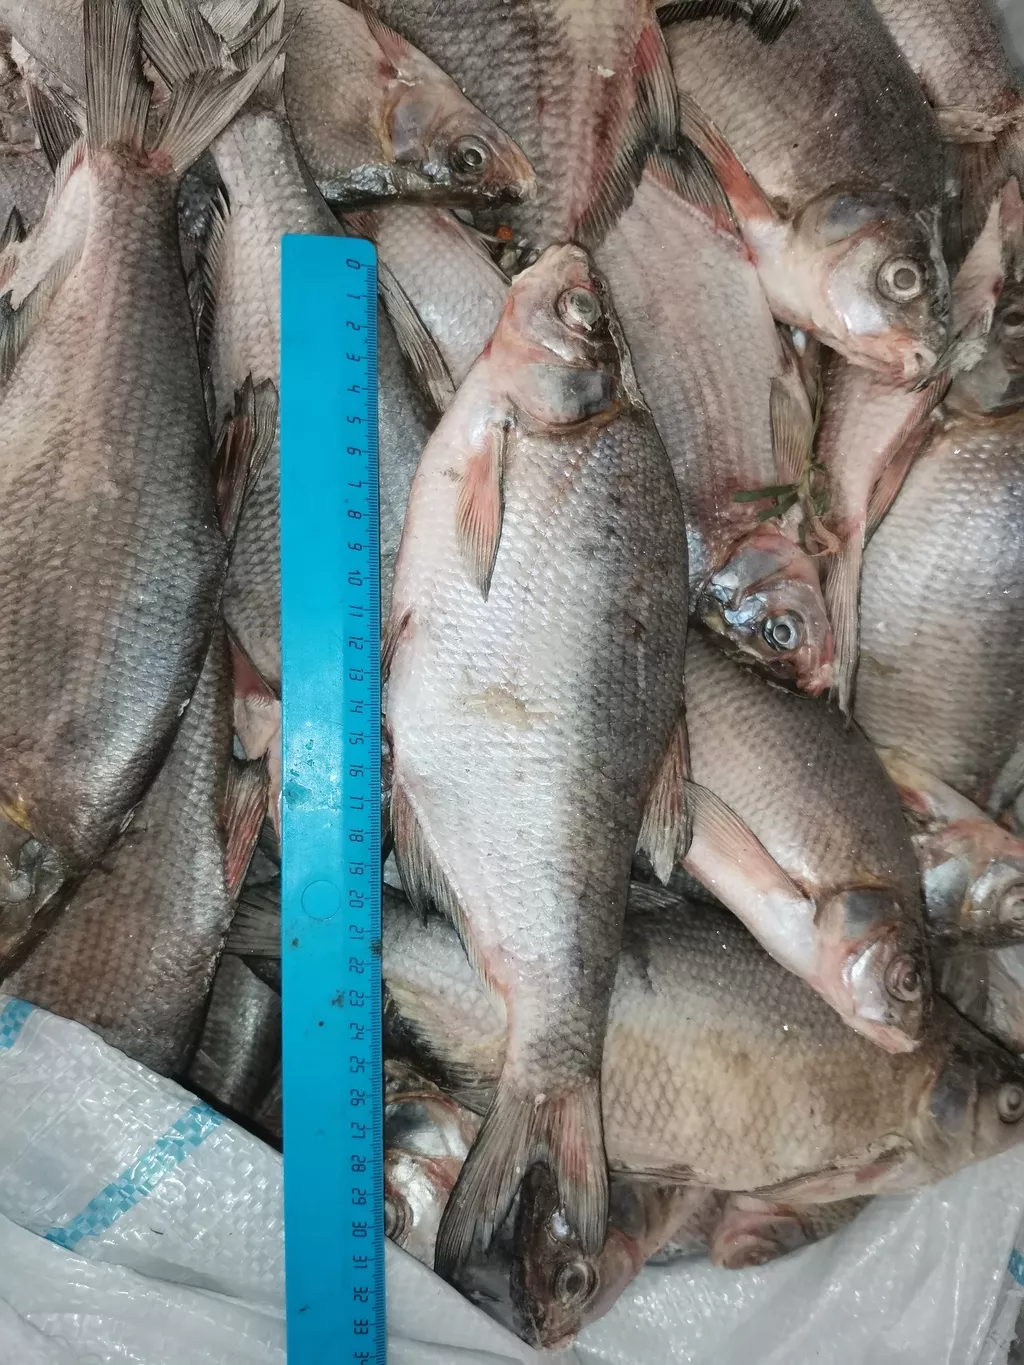 лещ и вся речная рыба в ассортименте  в Самаре и Самарской области